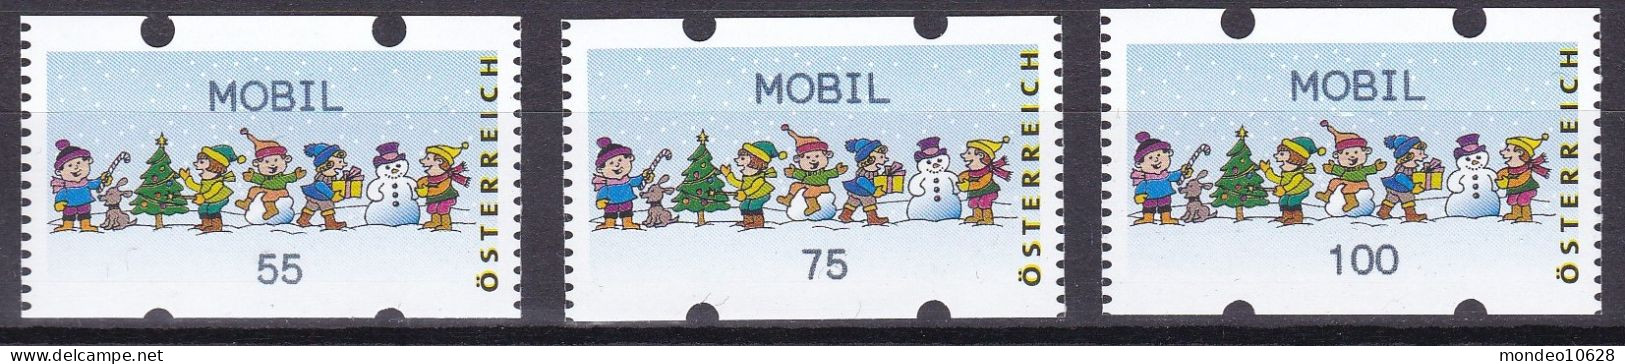 ATM Österreich - Ausgabe 24.11.2006 - Mobil - Kinder - Mit Zählnummern - Postfrisch (20) - Timbres De Distributeurs [ATM]